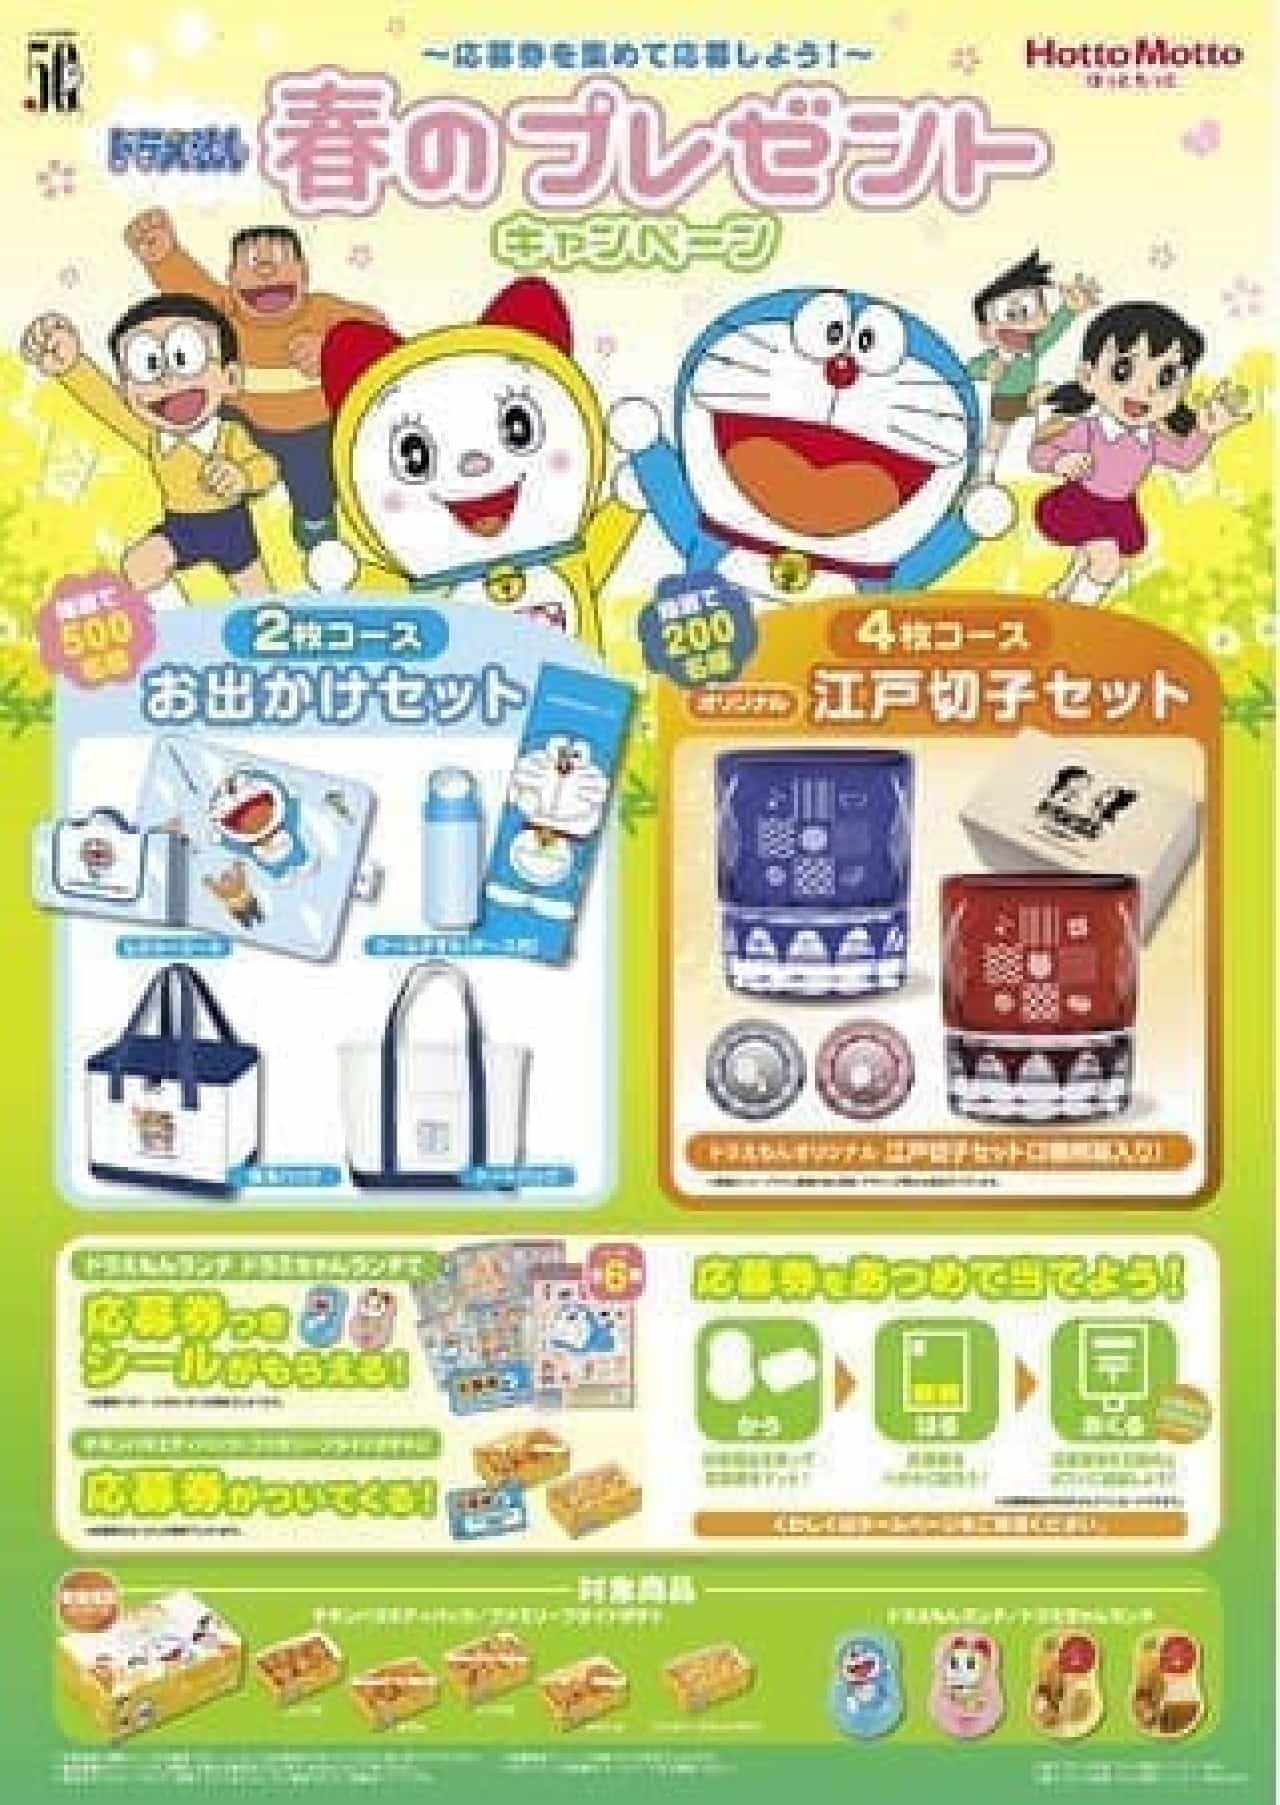 Hotto Motto "Doraemon Spring Present Campaign"